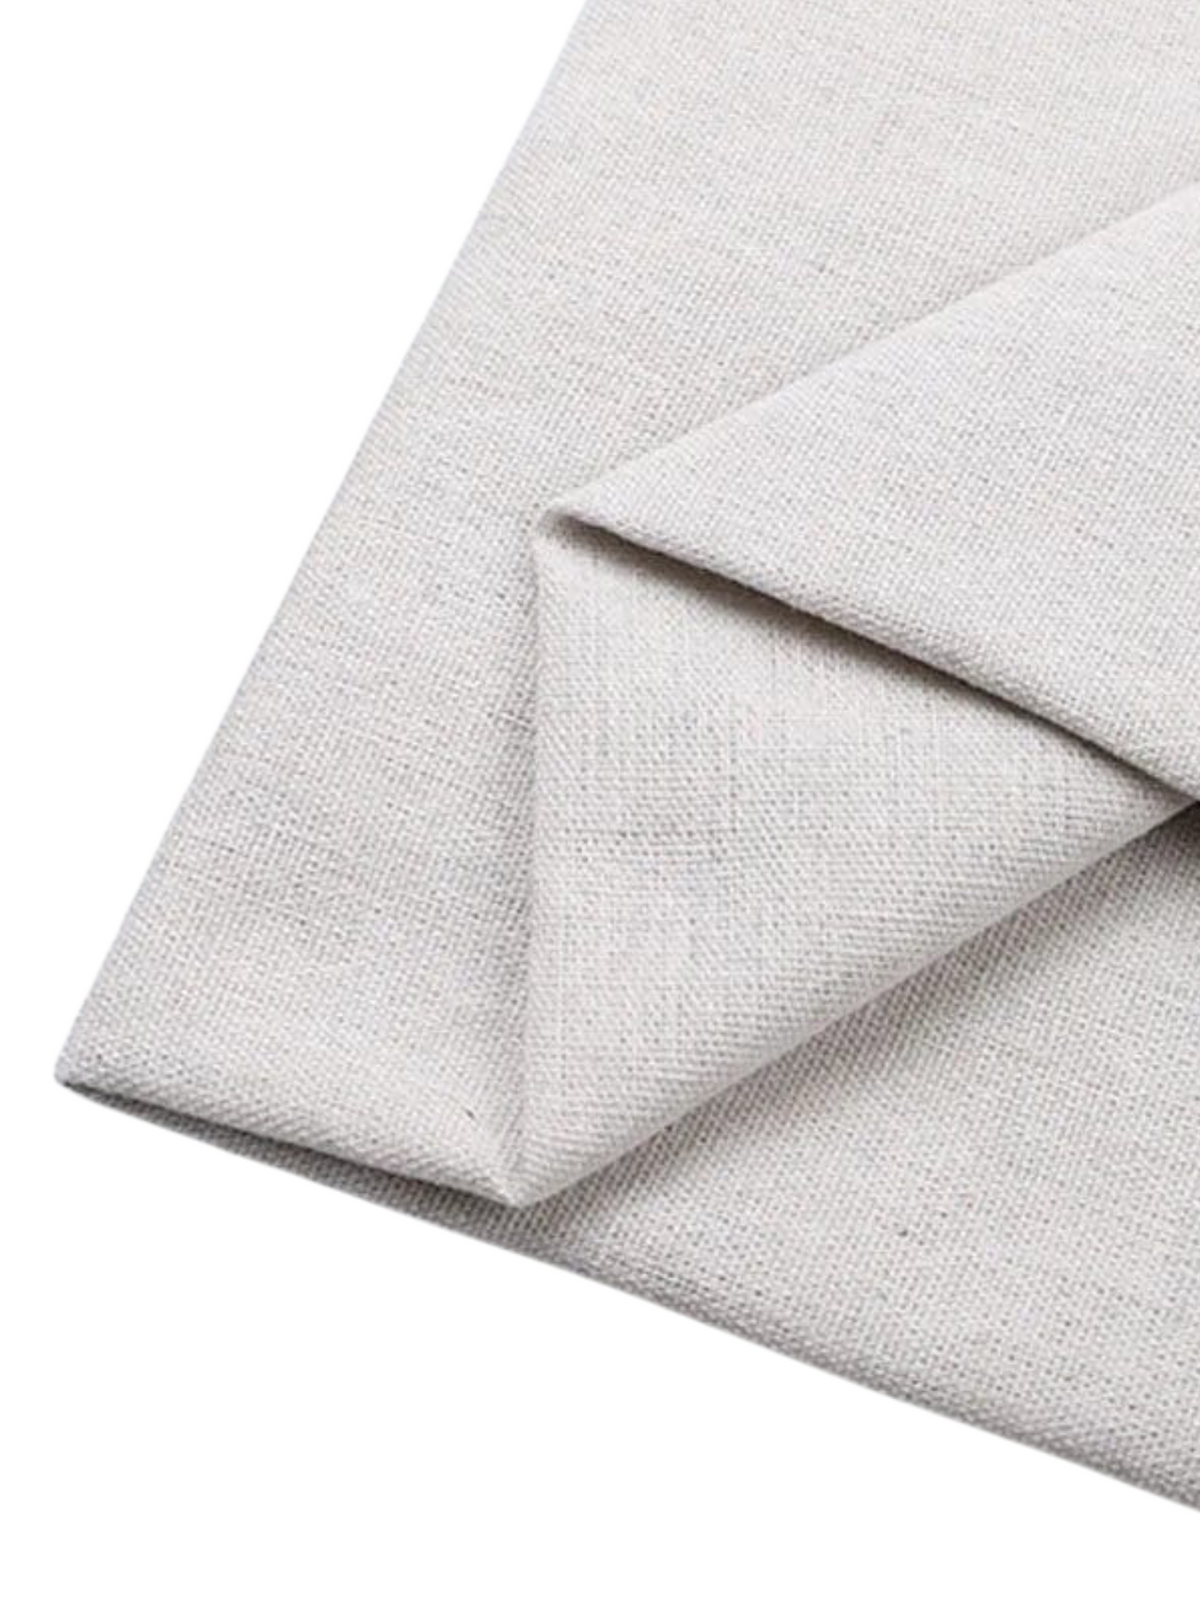 Tissu Coton/Lin pour Poncho DIY  Créme / 0.5mX1.5m / Coton/Lin